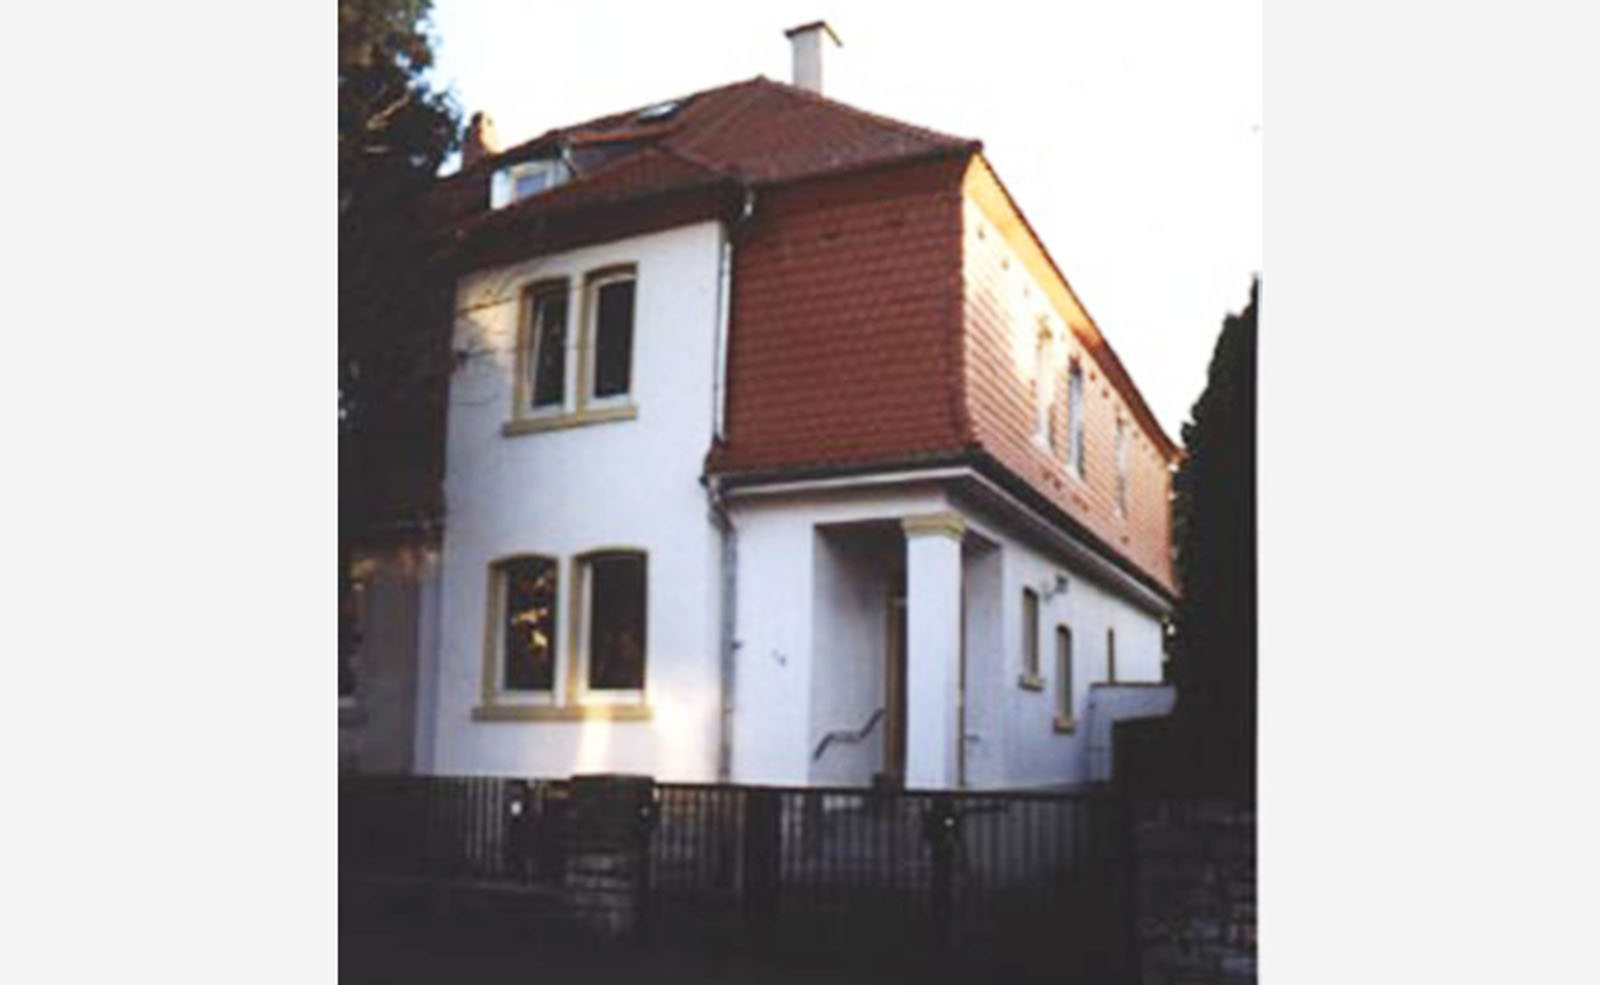  Umbau und Sanierung Jugendstilwohnhaus, Neu-Isenburg 